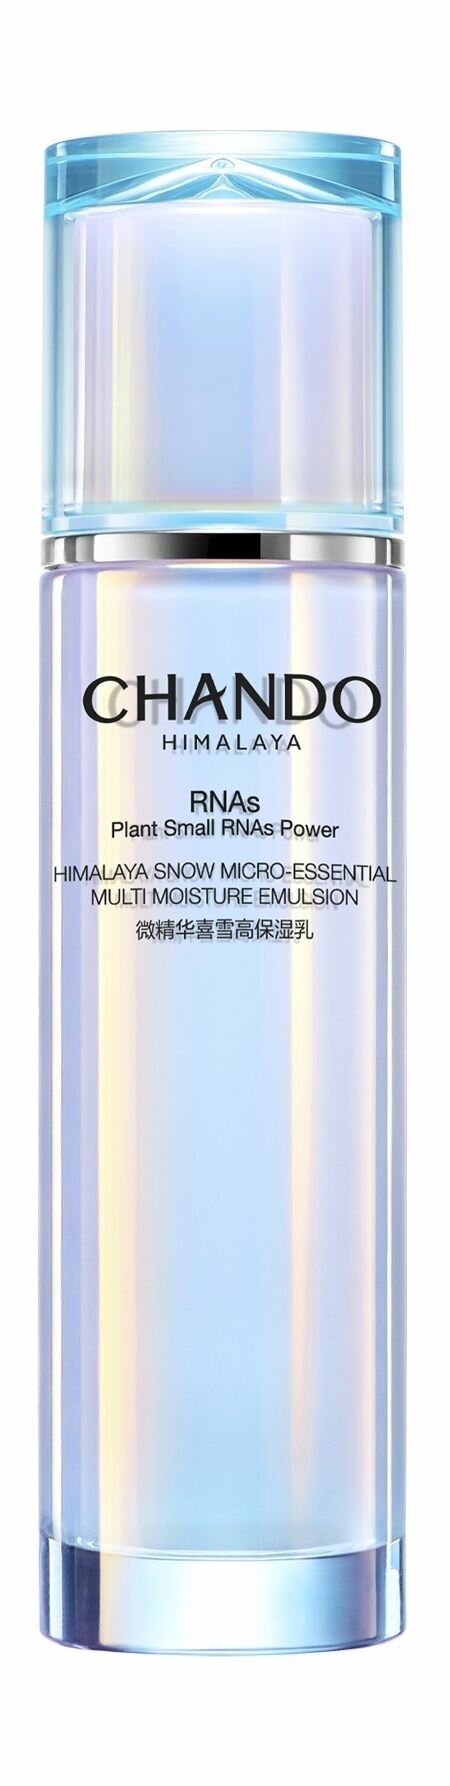 Увлажняющая эмульсия для лица с экстрактом гималайского укропа / Chando Himalaya Plants Small RNA's Power Emulsion